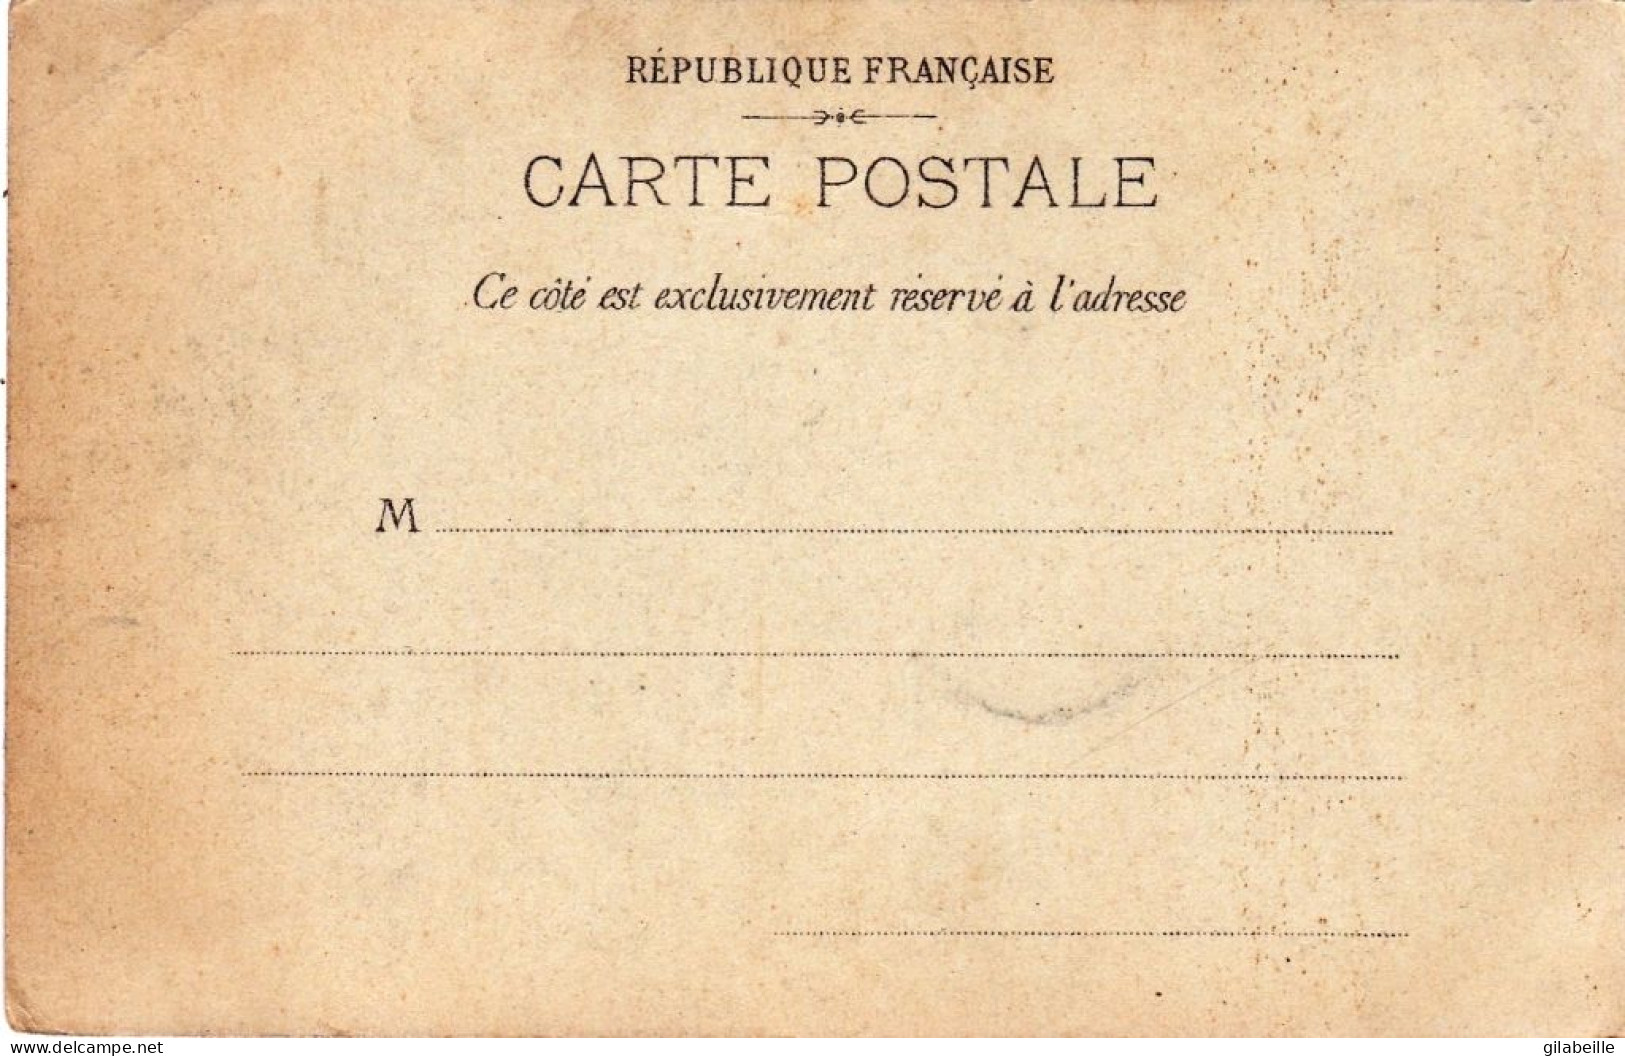 75 - PARIS - Exposition Universelle De 1900 - Exposition Coloniale Du Trocadero - Mostre